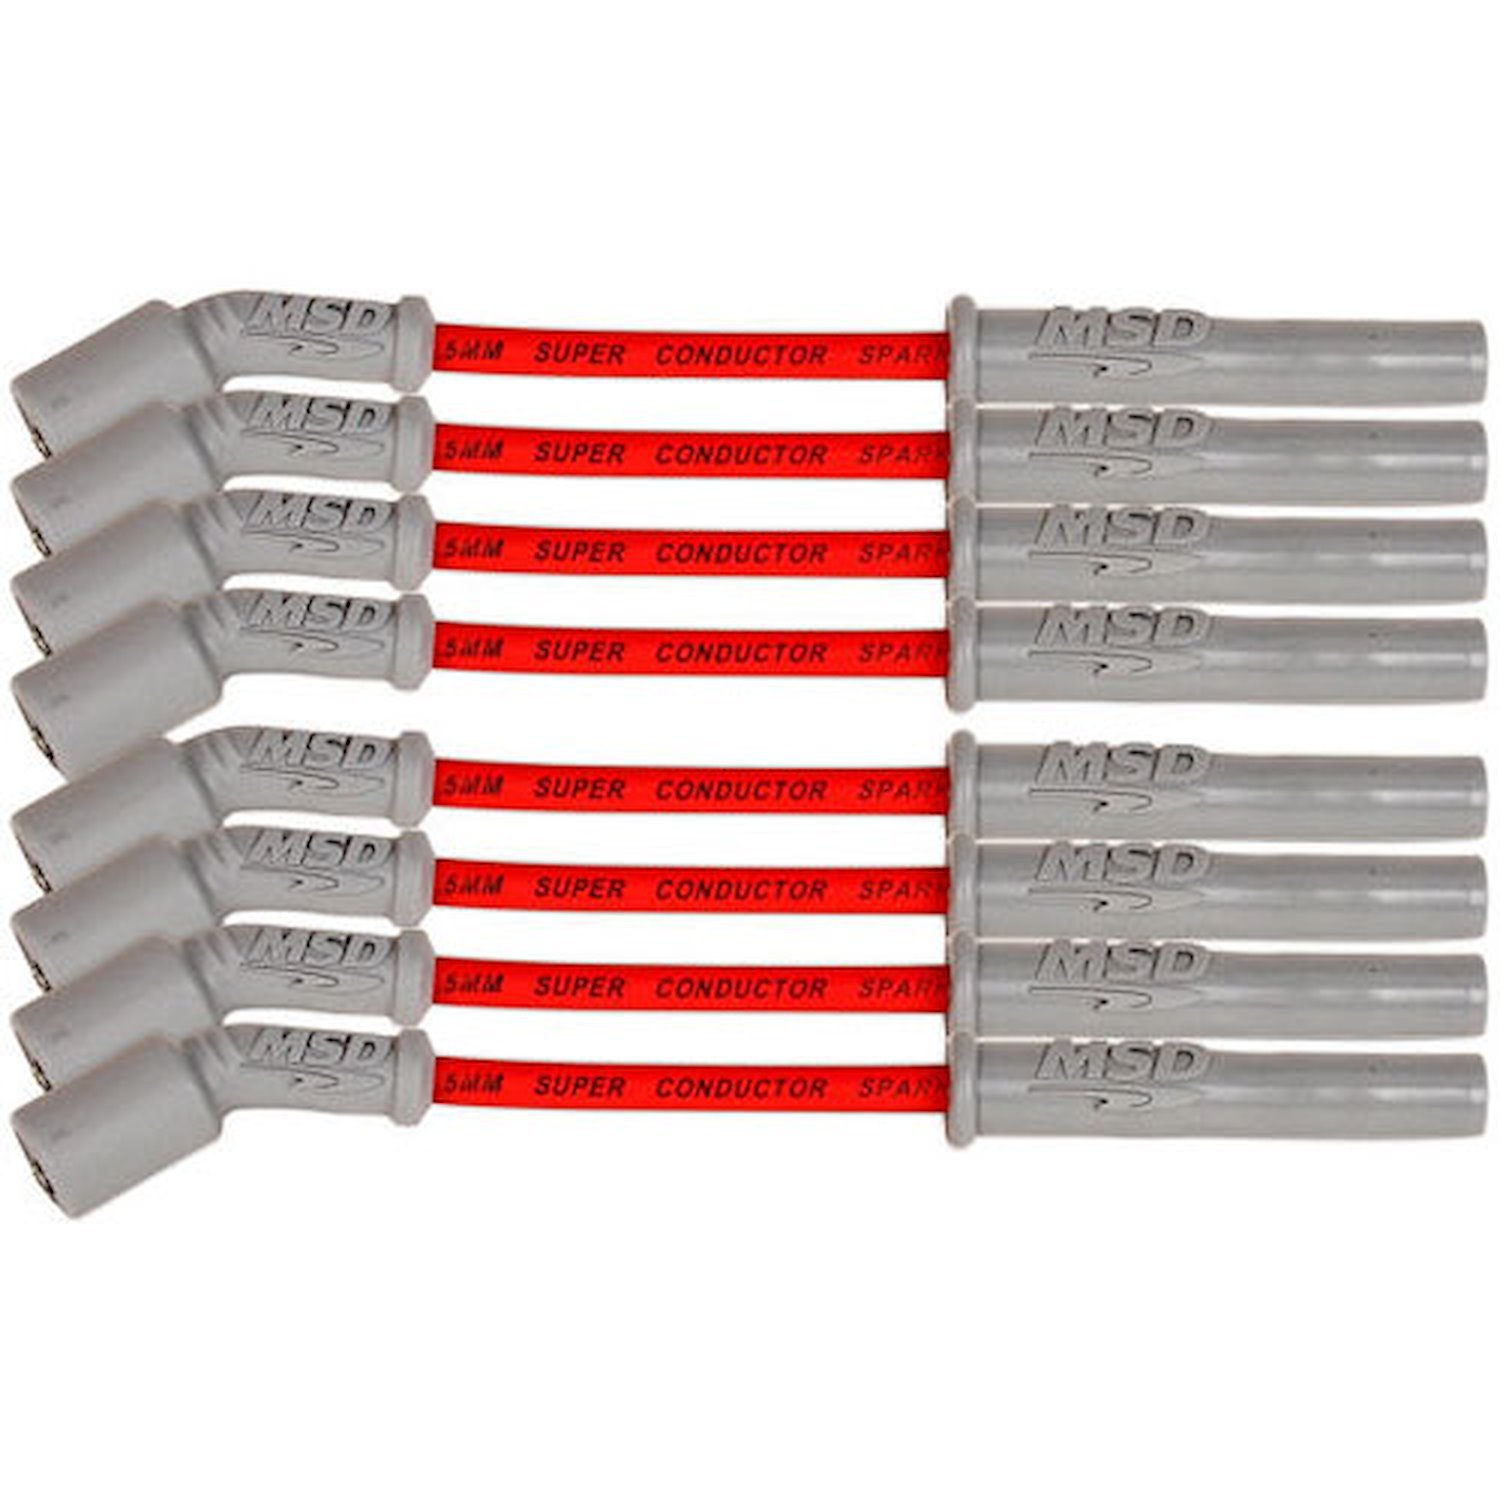 33829 Super Conductor 8.5 mm Spark Plug Wires for Select GM Models w/Gen V LT1, LT4 Engines [Red]